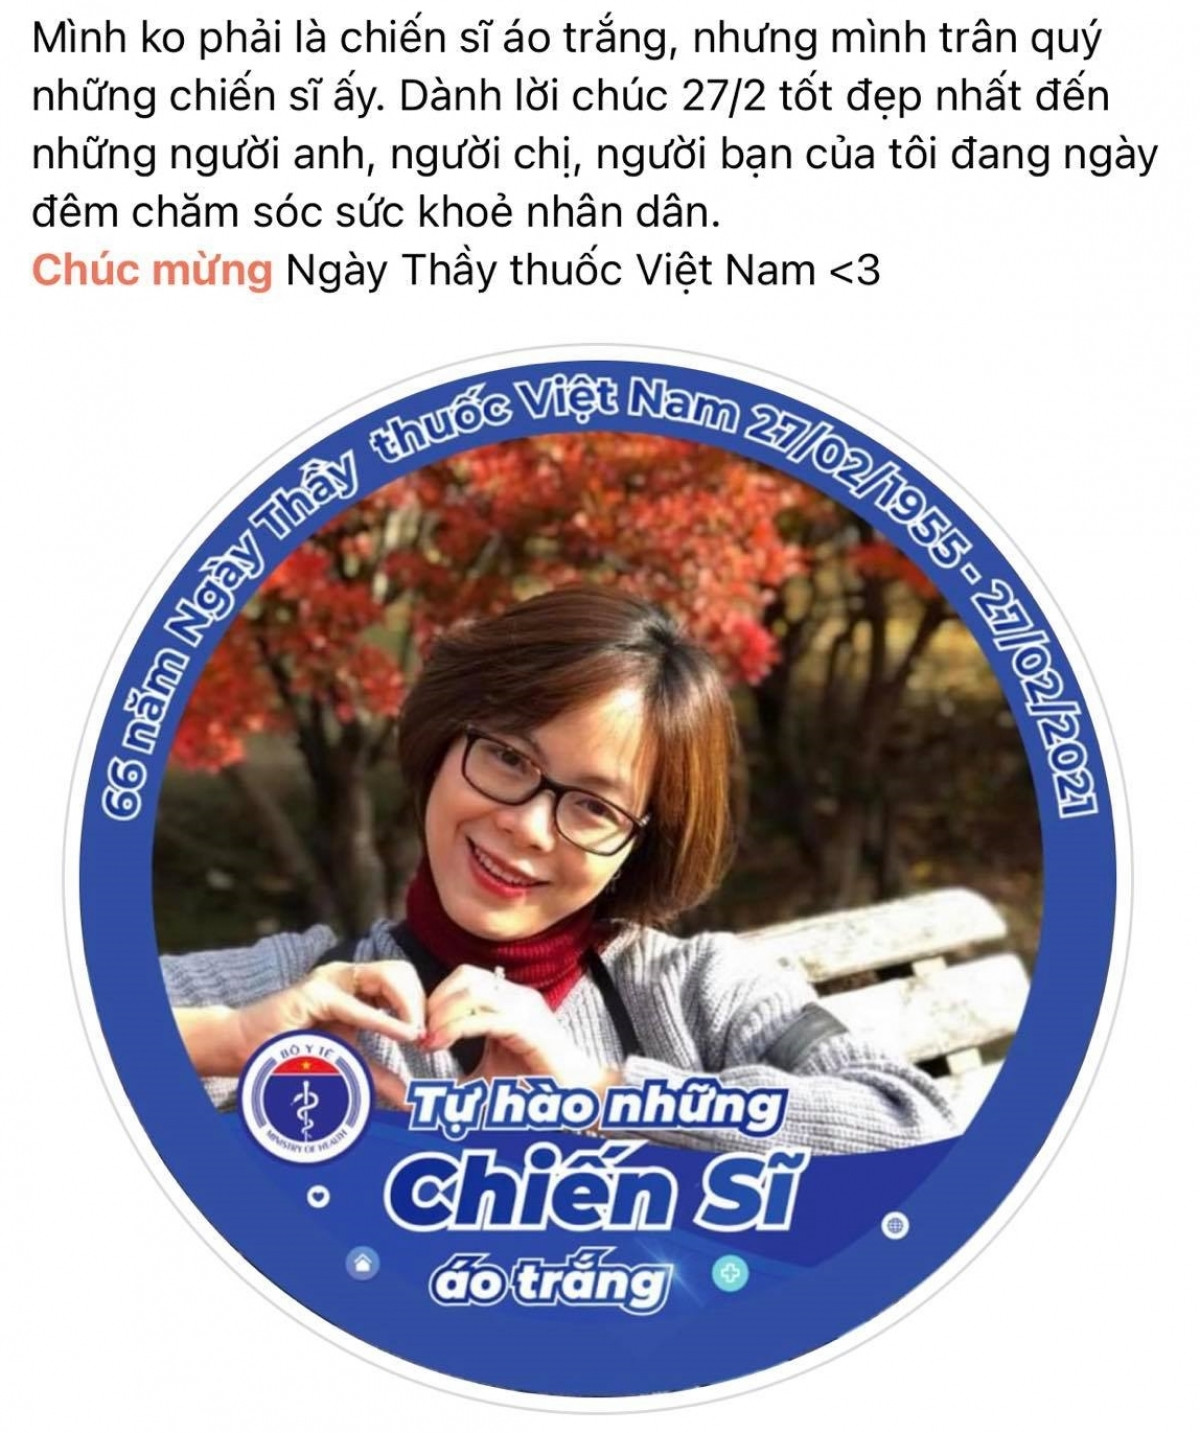 Những ngày qua, trên mạng xã hội Facebook, cộng đồng mạng gửi những lời tri ân và những tình cảm sâu sắc nhất tới các y bác sĩ nhân Ngày Thầy thuốc Việt Nam (27/2). Rất nhiều người đã cập nhật khung hình 